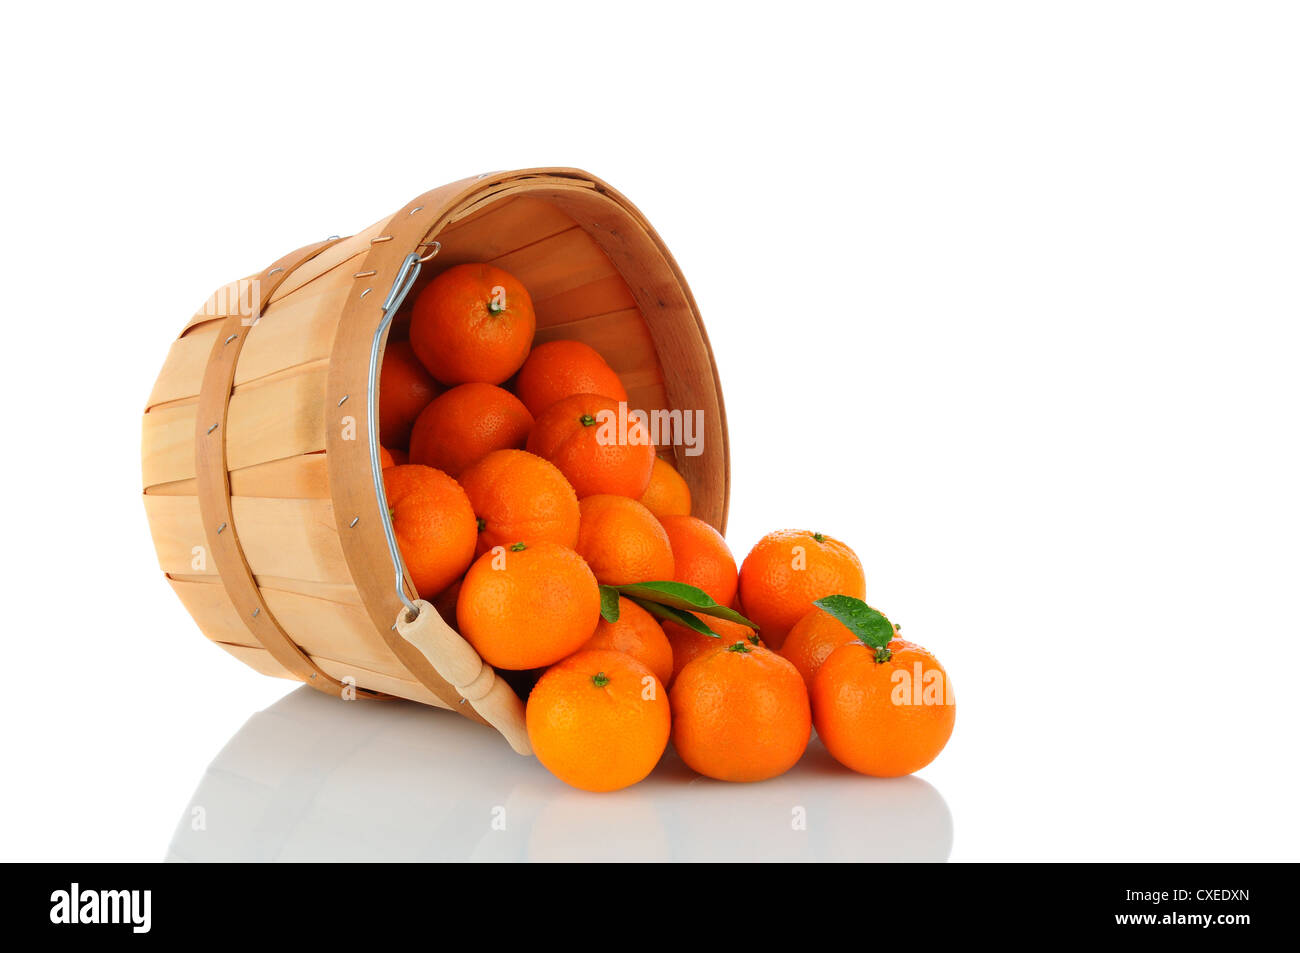 Un panier de Mandarines Clémentines incliné sur le côté avec des fruits sur la surface. Banque D'Images